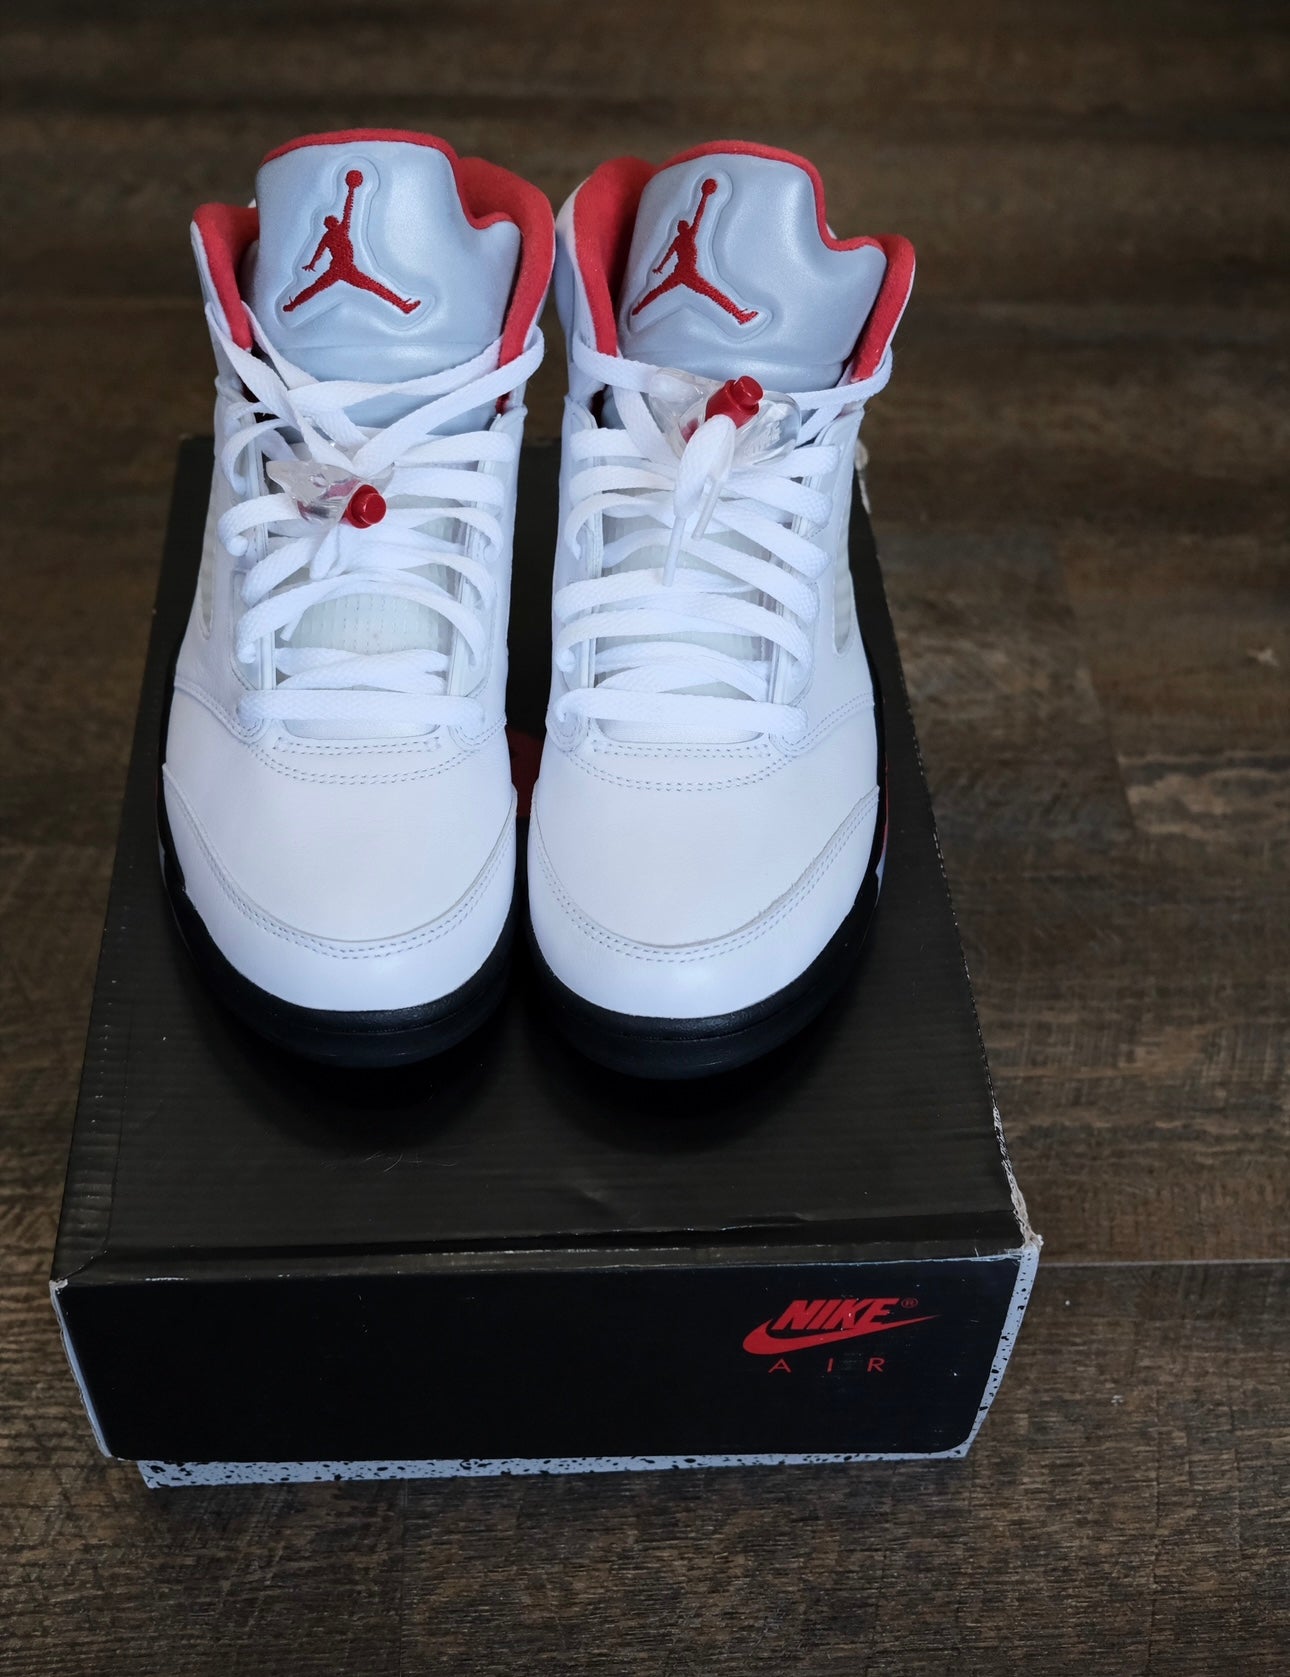 Air Jordan 5 “Fire Red” Size 9